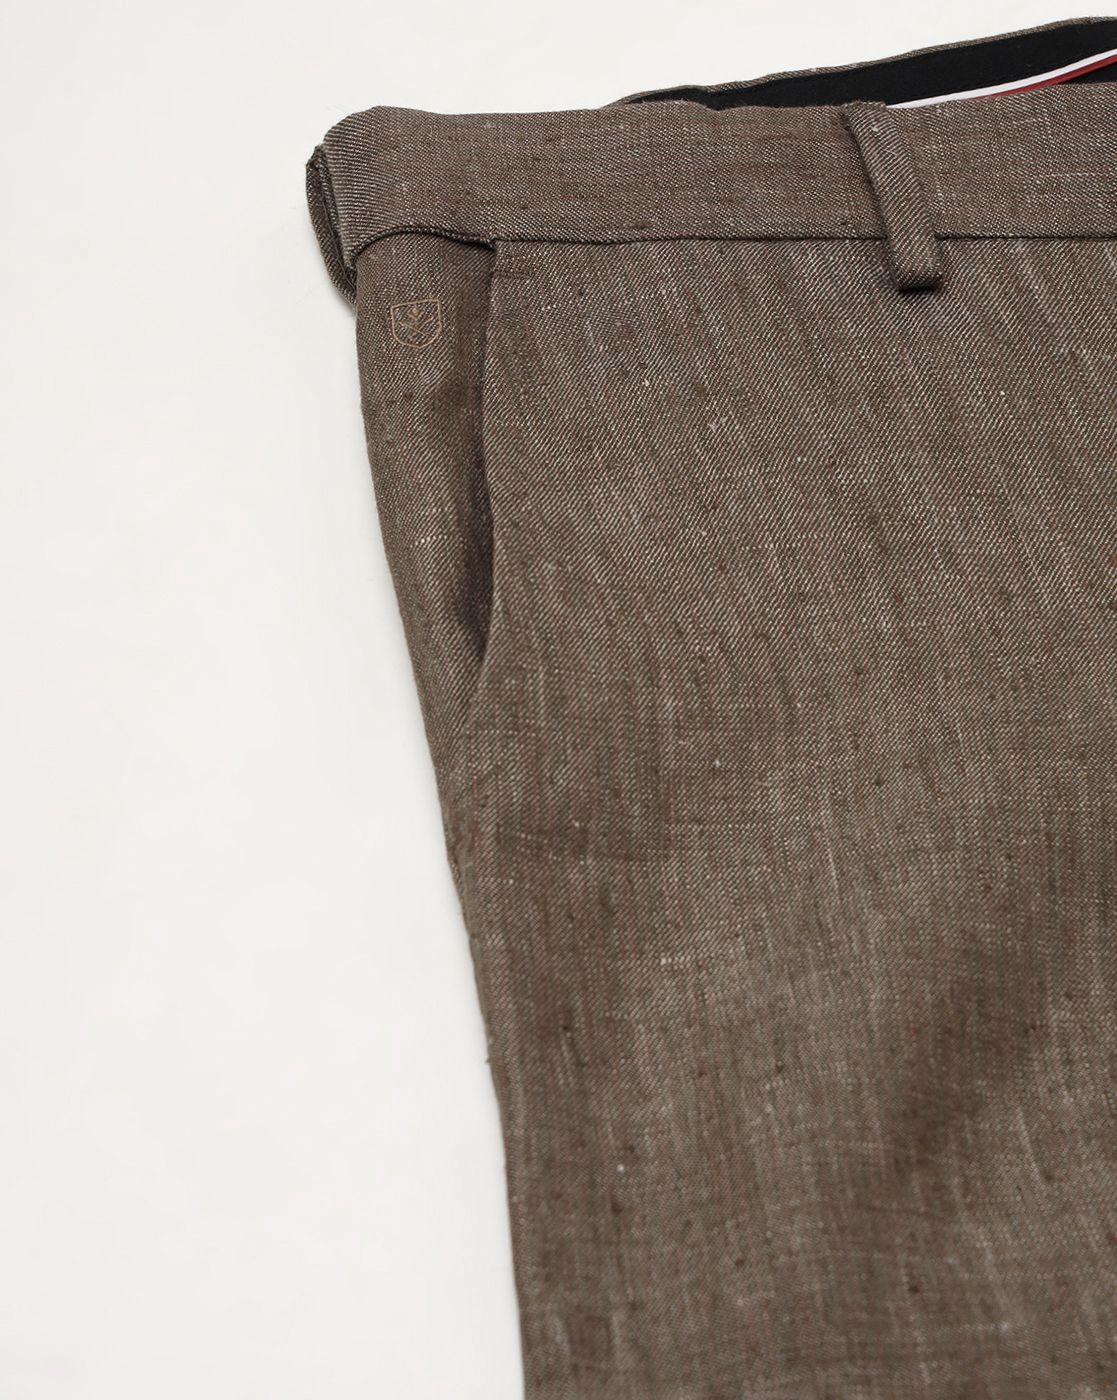 Lonestar Brown Pant | Brown pants, Grey shirt, Formal pant